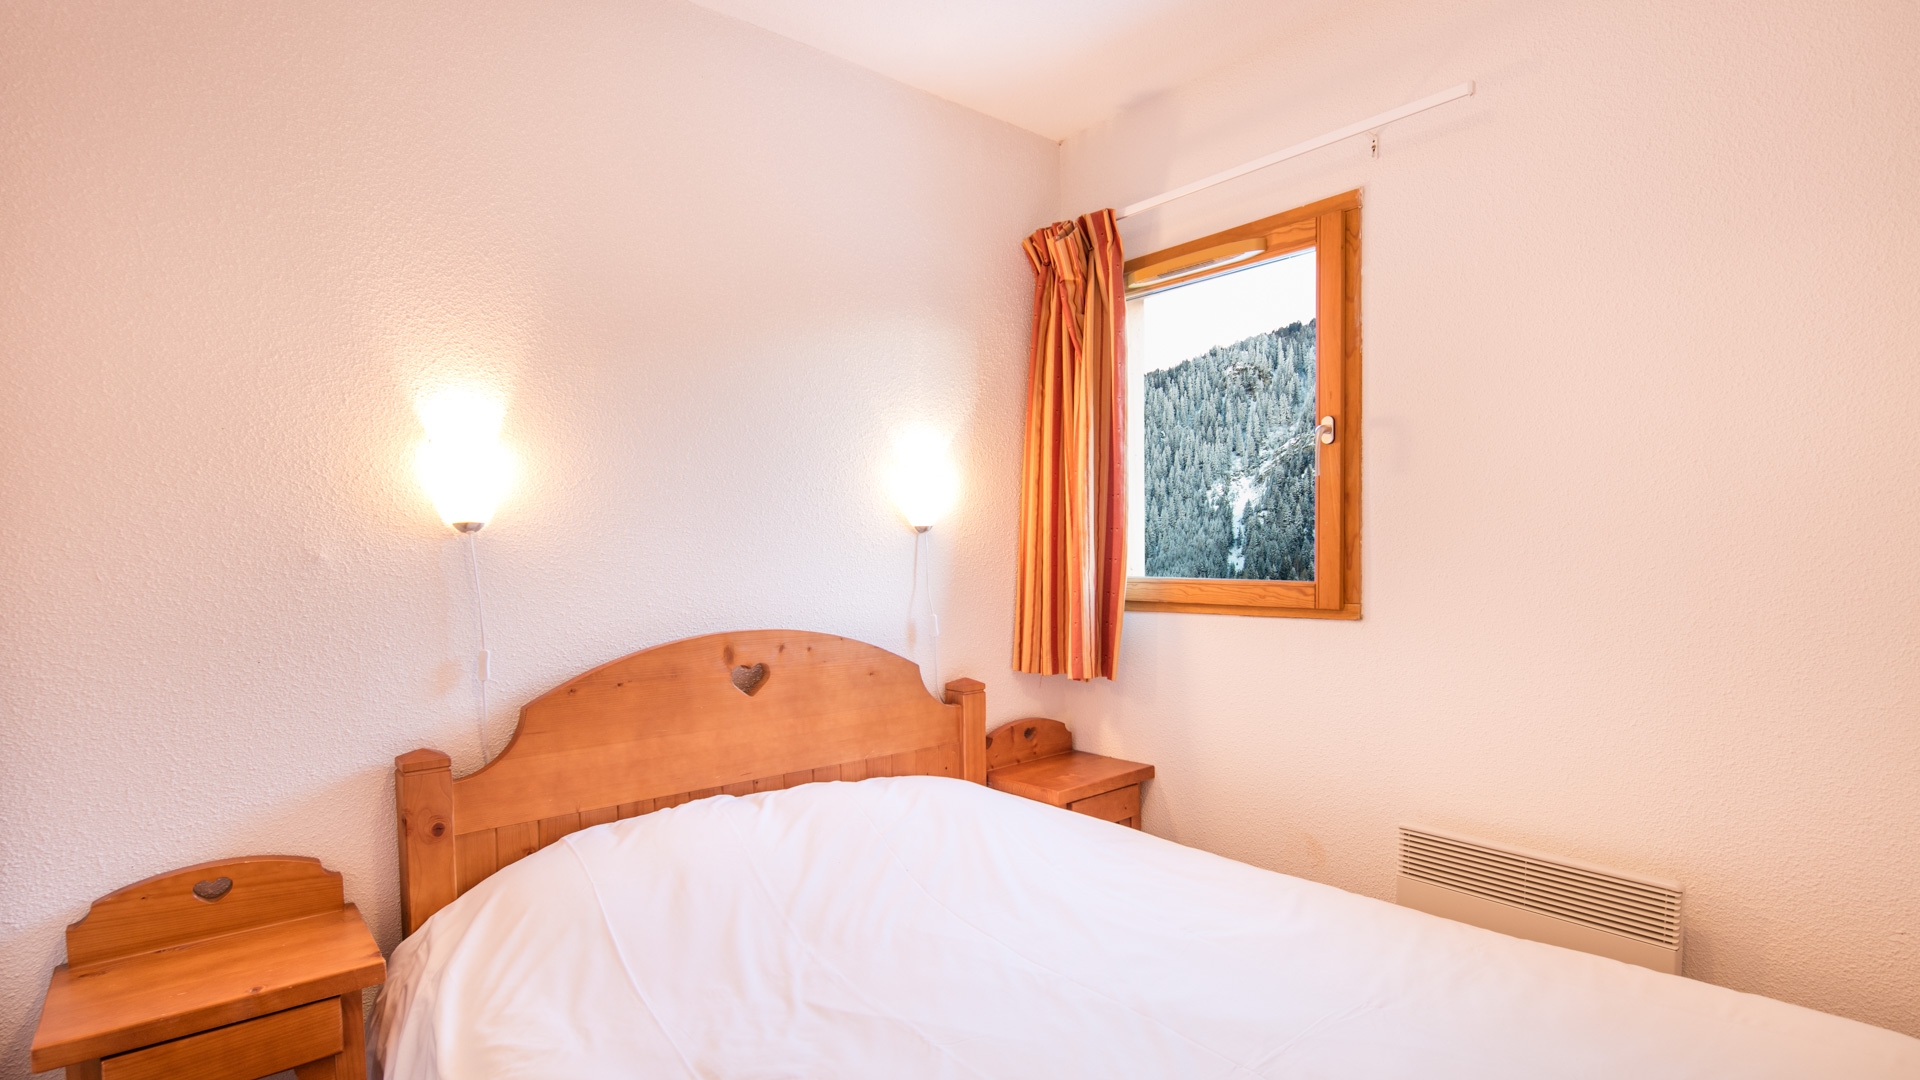 Les Chalets de la Ramoure in Valfréjus: Ferienwohnung für 4 Personen: Schlafzimmer (Beispiel)